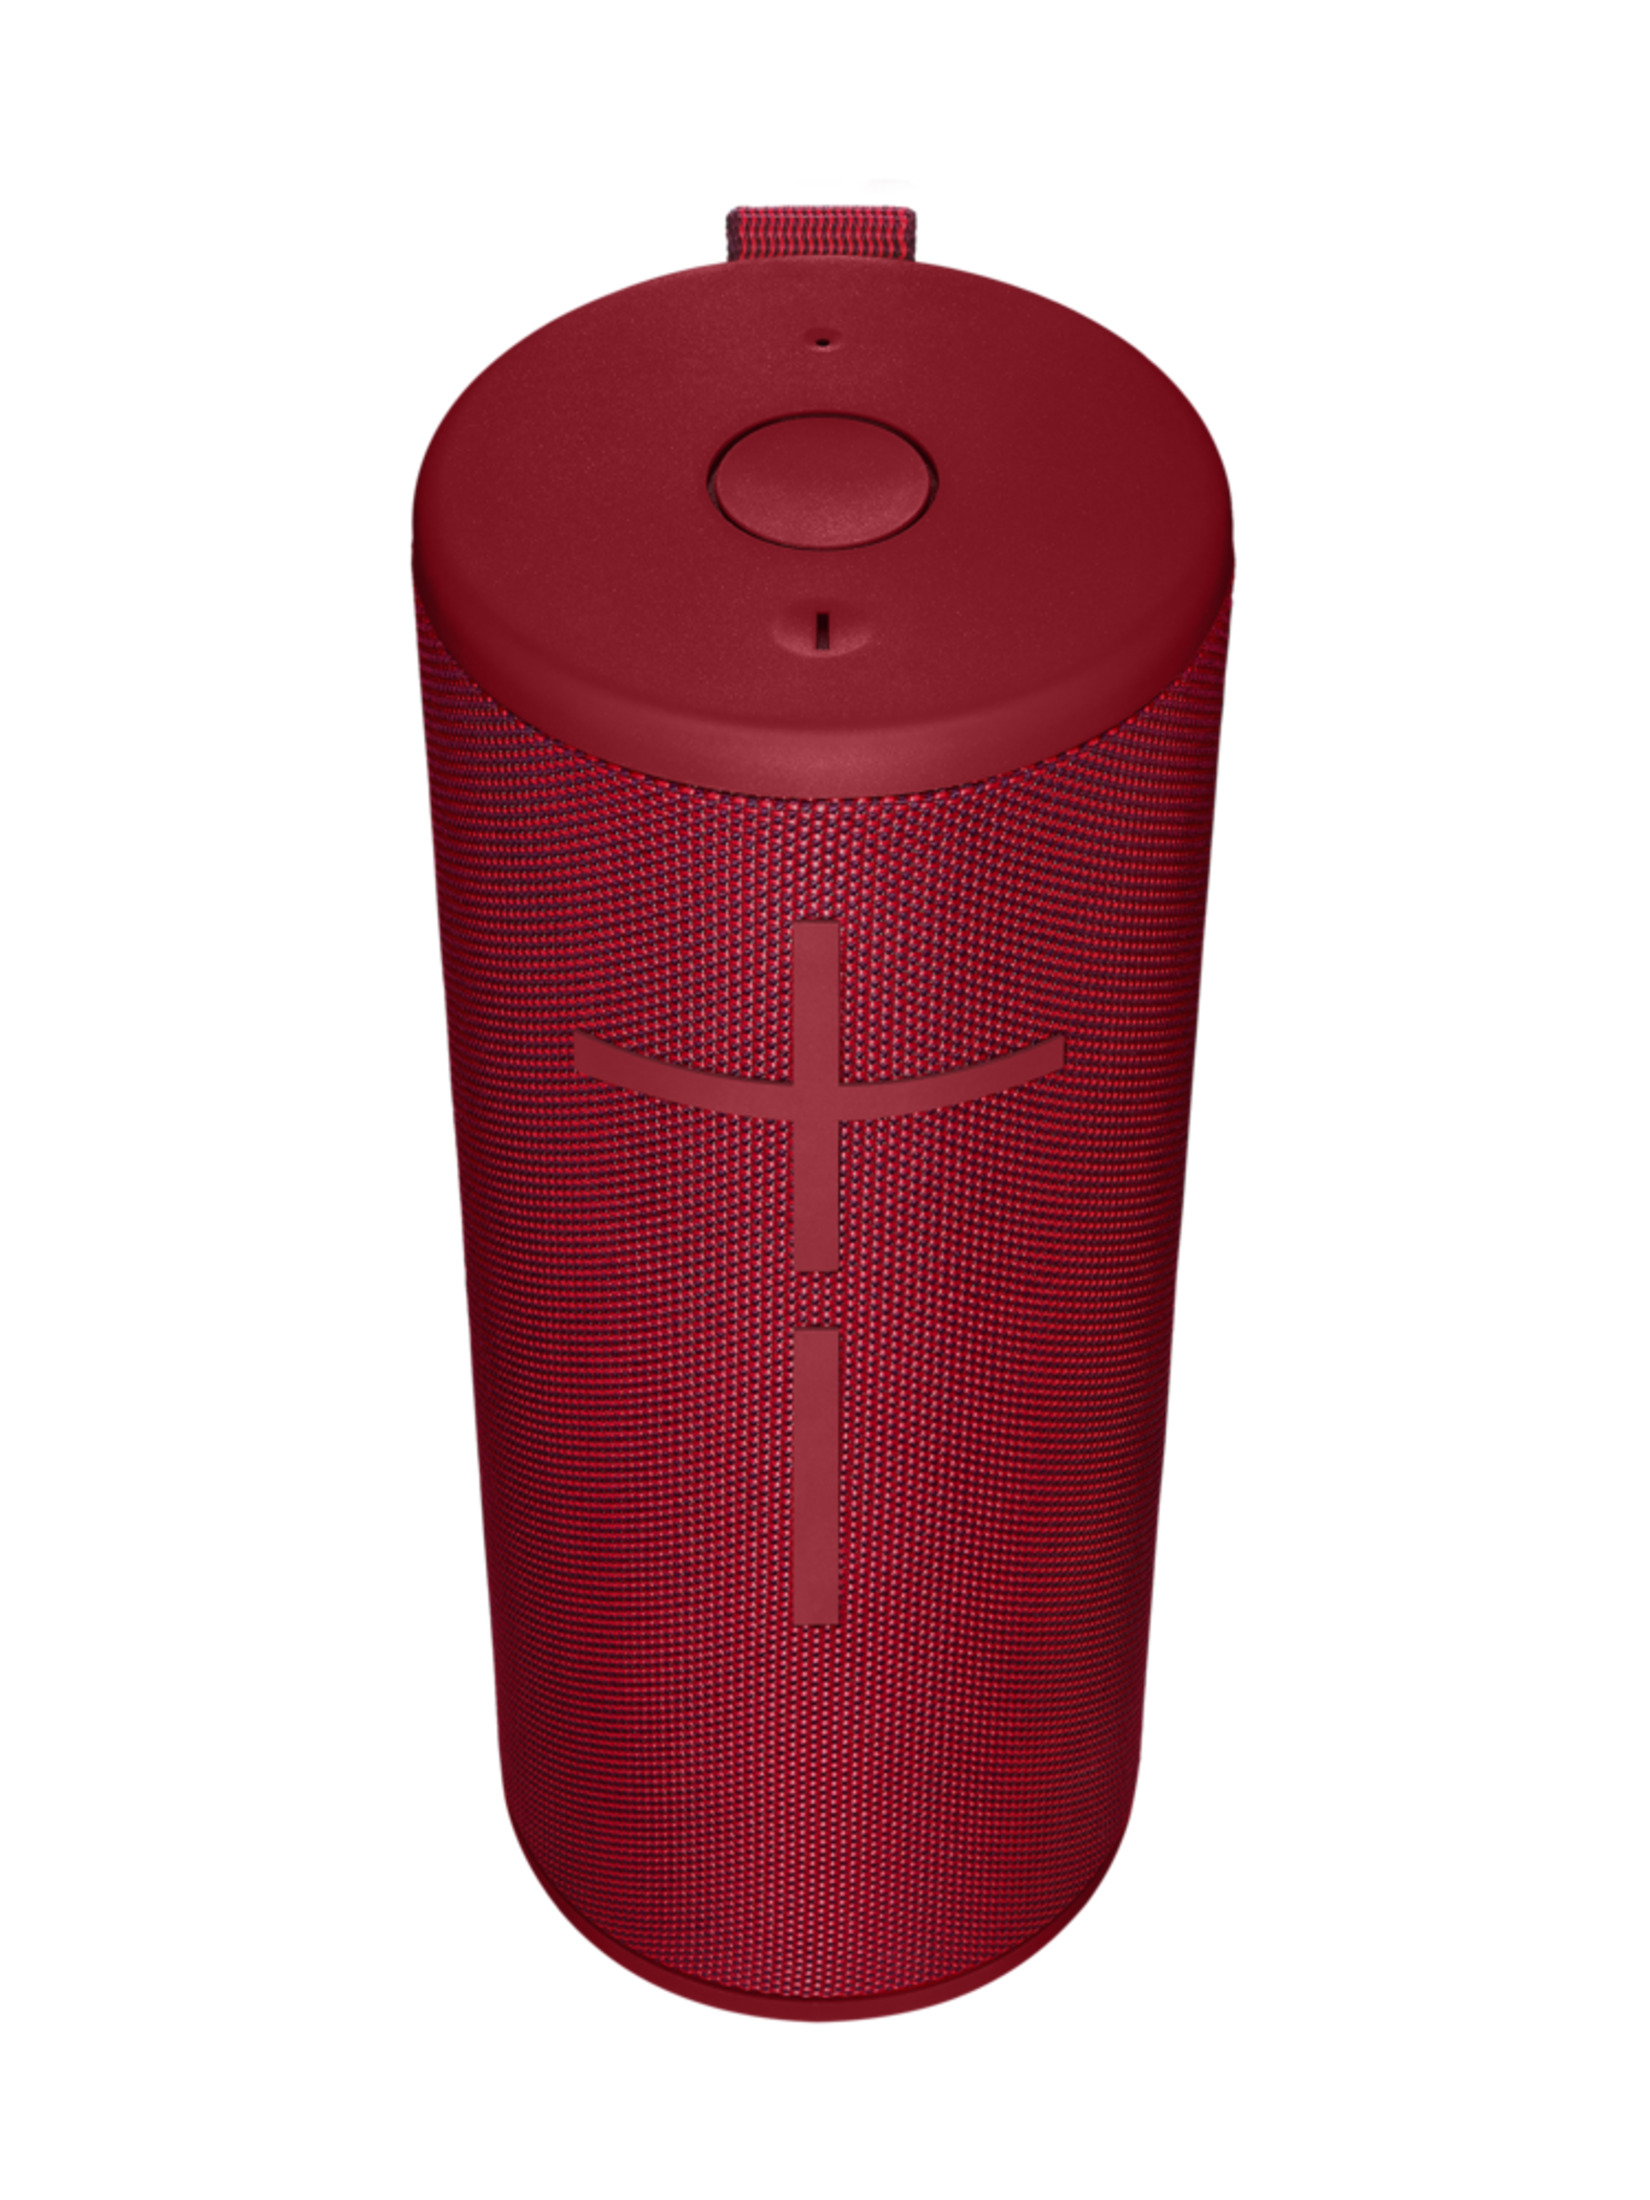 ULTIMATE EARS 984-001495 BOOM RED SUNSET Wasserfest Bluetooth Lautsprecher, Red, Sunset 3